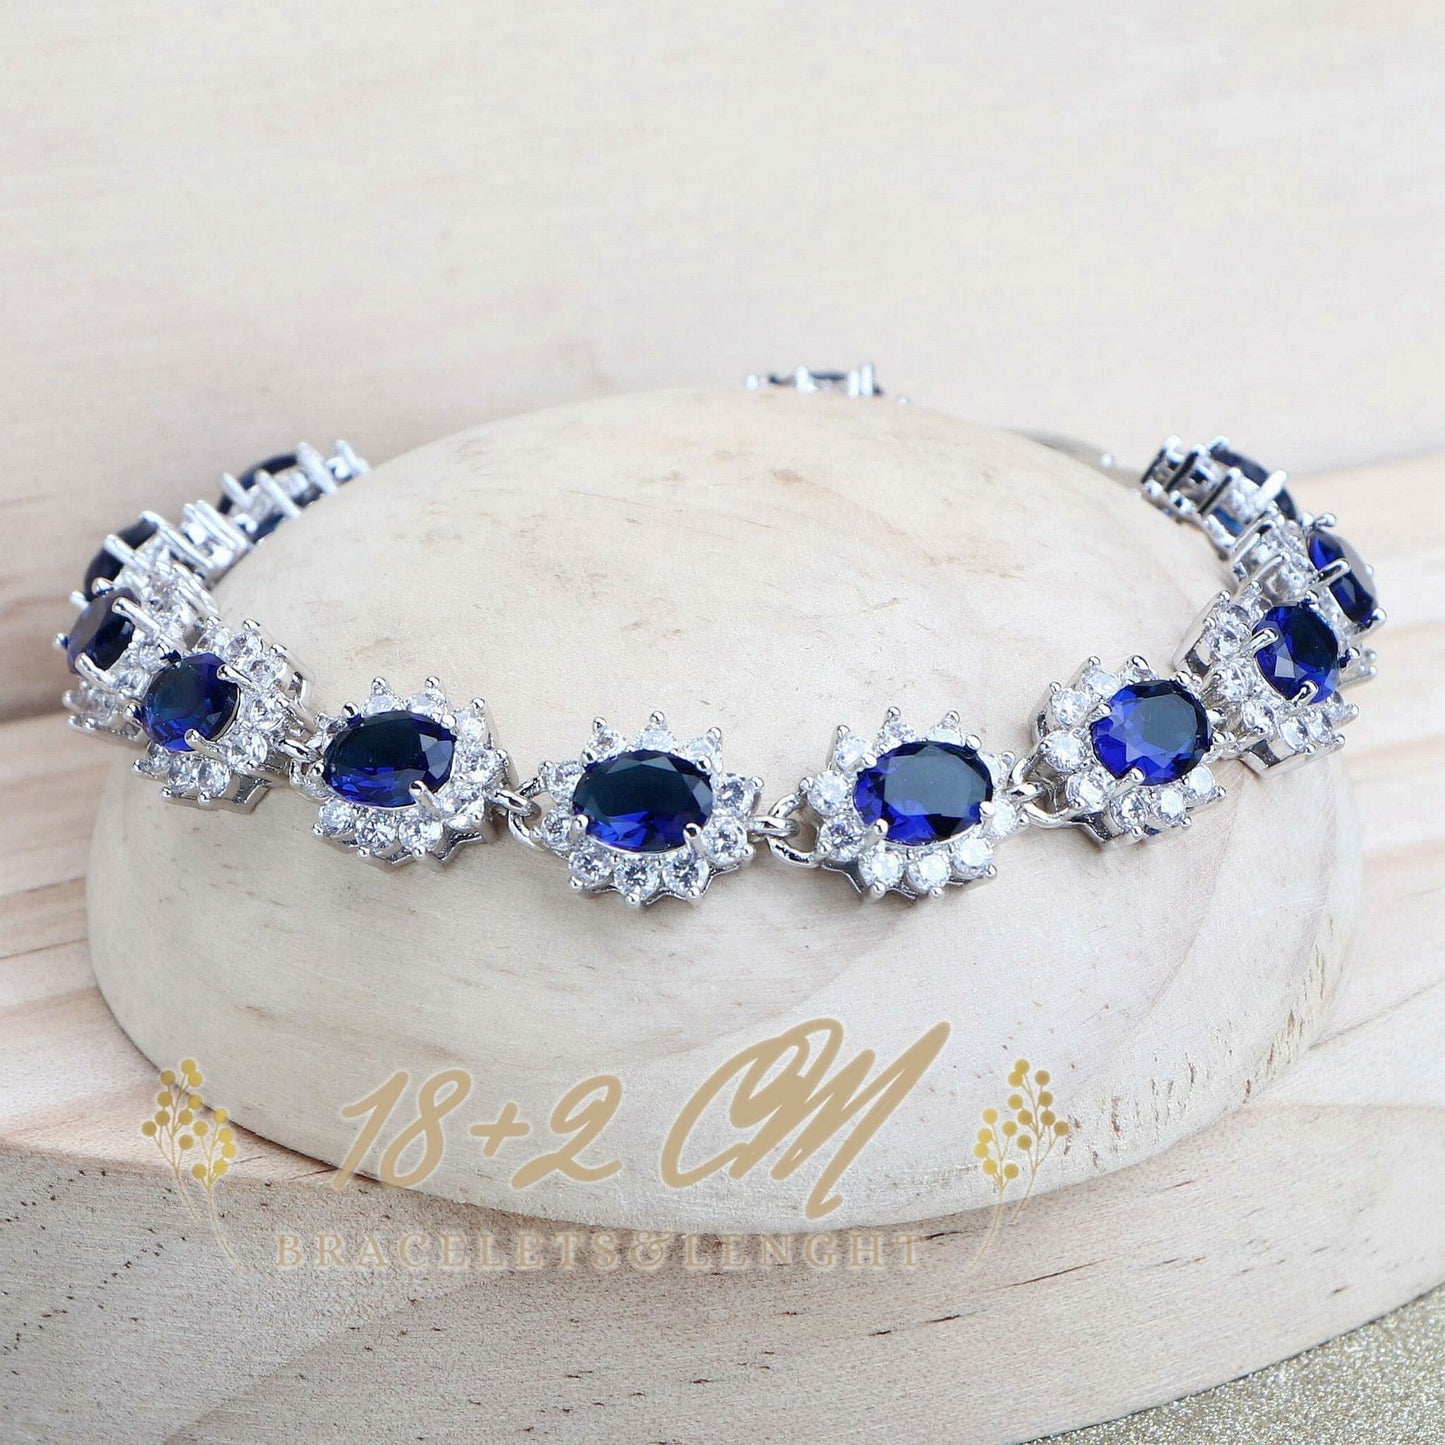 Women Bridal Jewelry Sets Blue Zirconia Fine Jewellery Wedding Necklace Earrings Rings Bracelets Pendant Set - Silver 925 Pendant Necklace